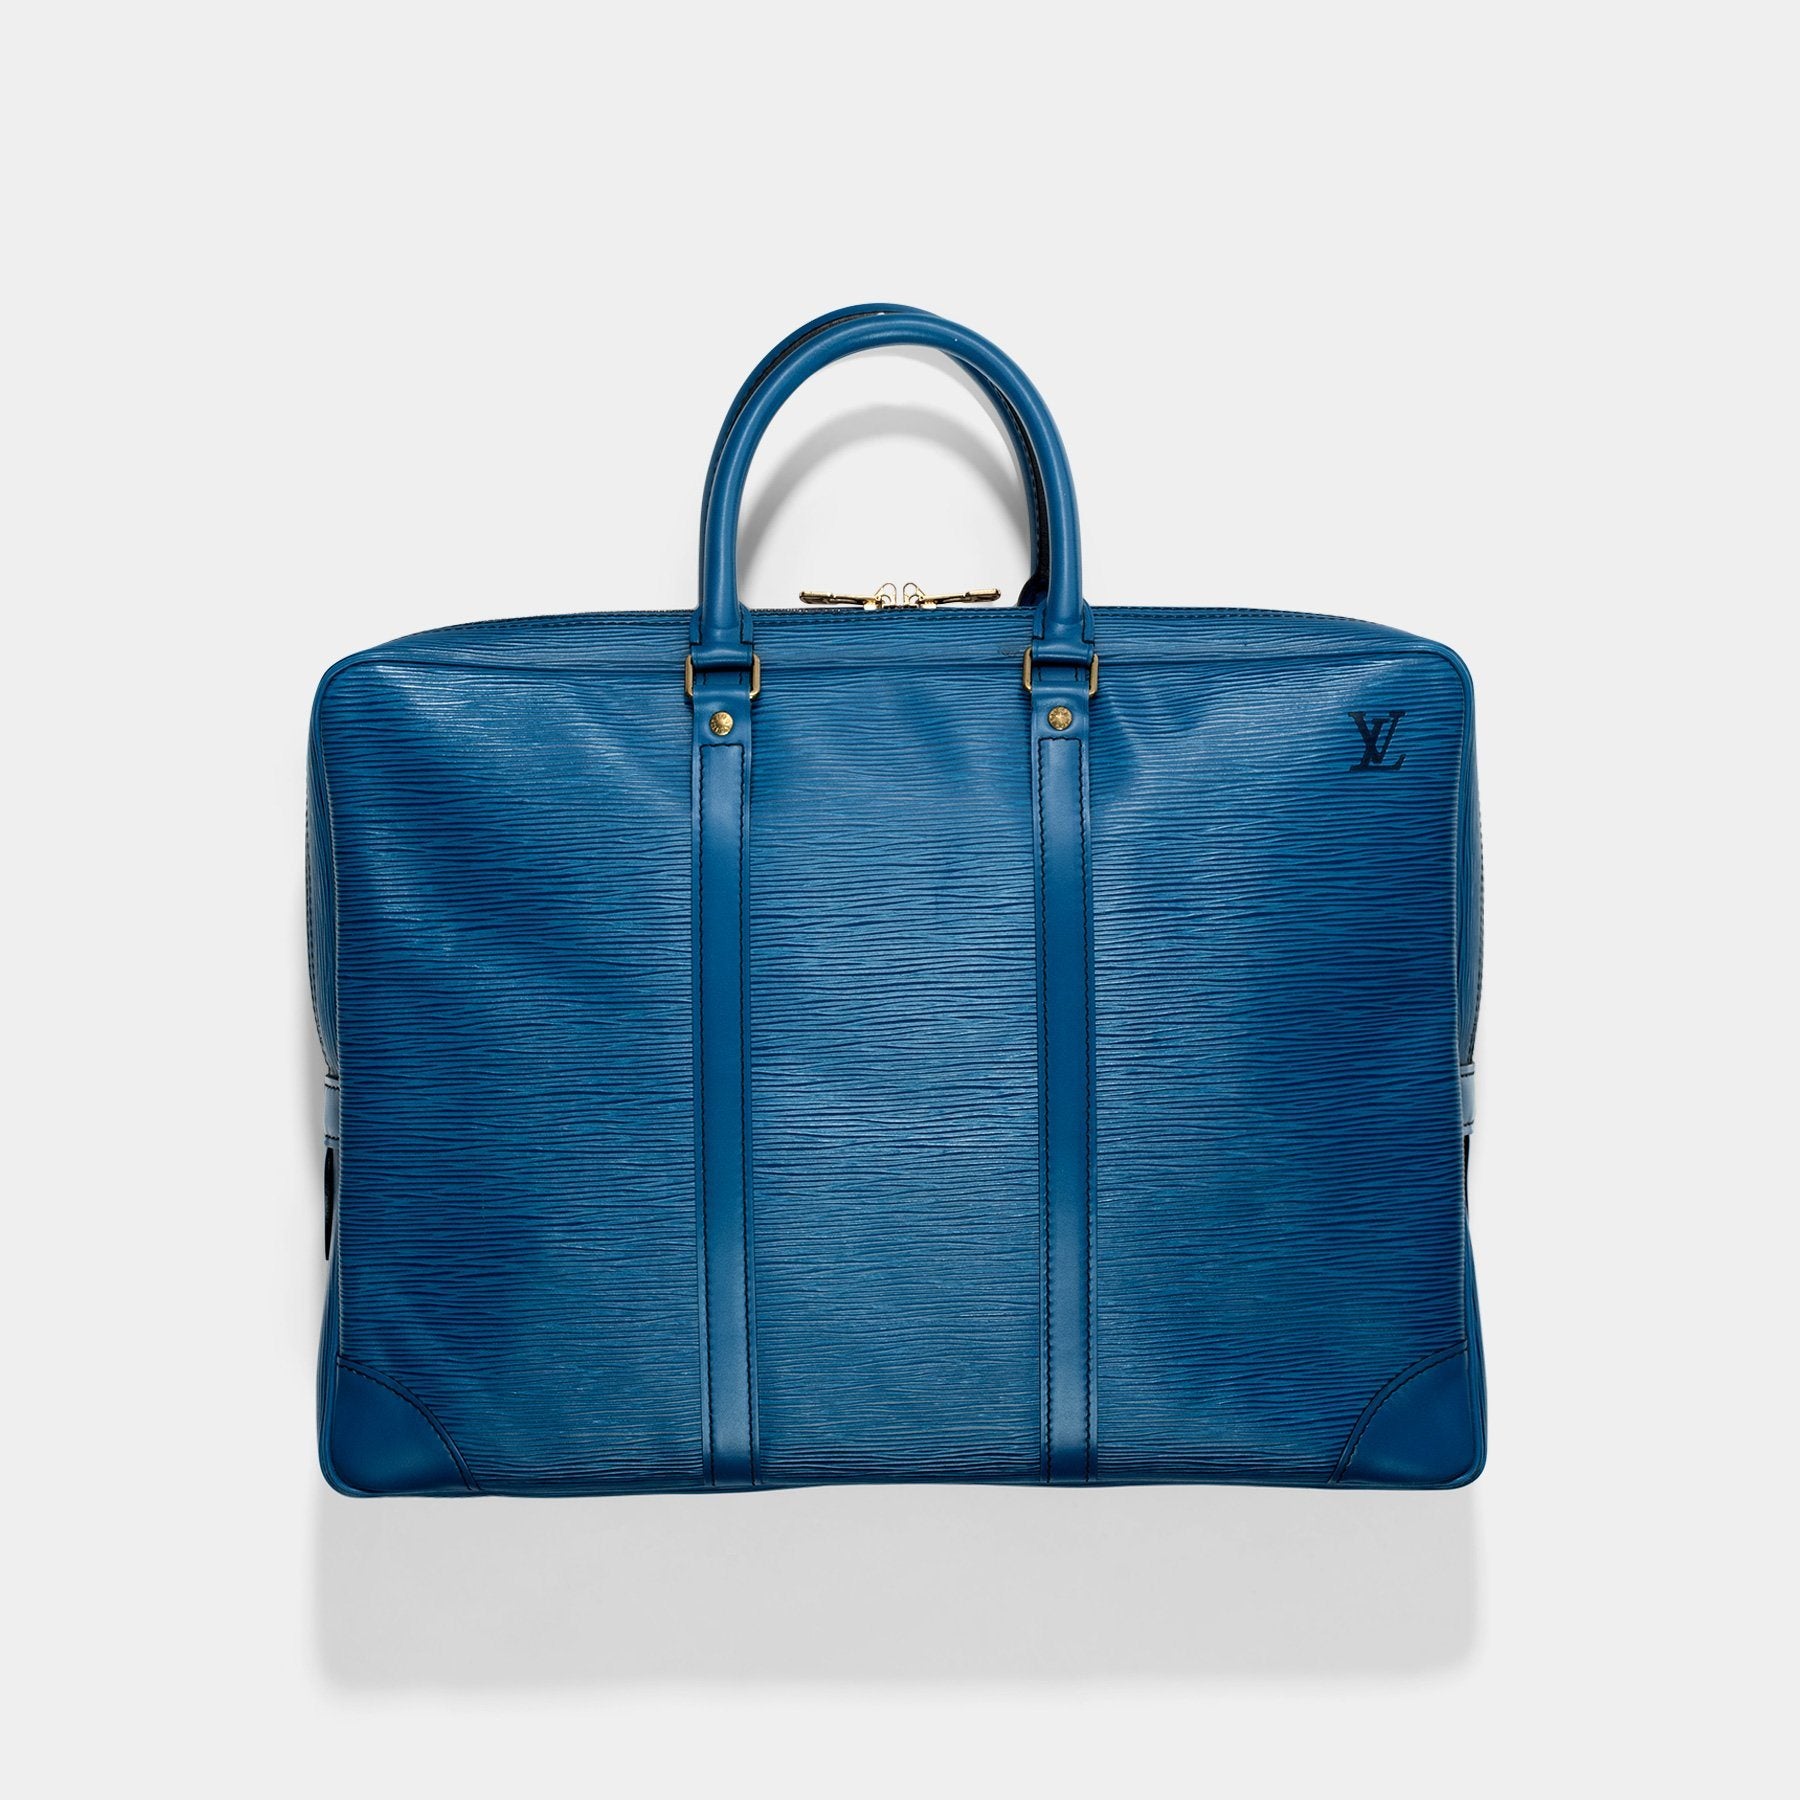 Authentic Louis Vuitton Petit Noé in Blue Epi Leather 